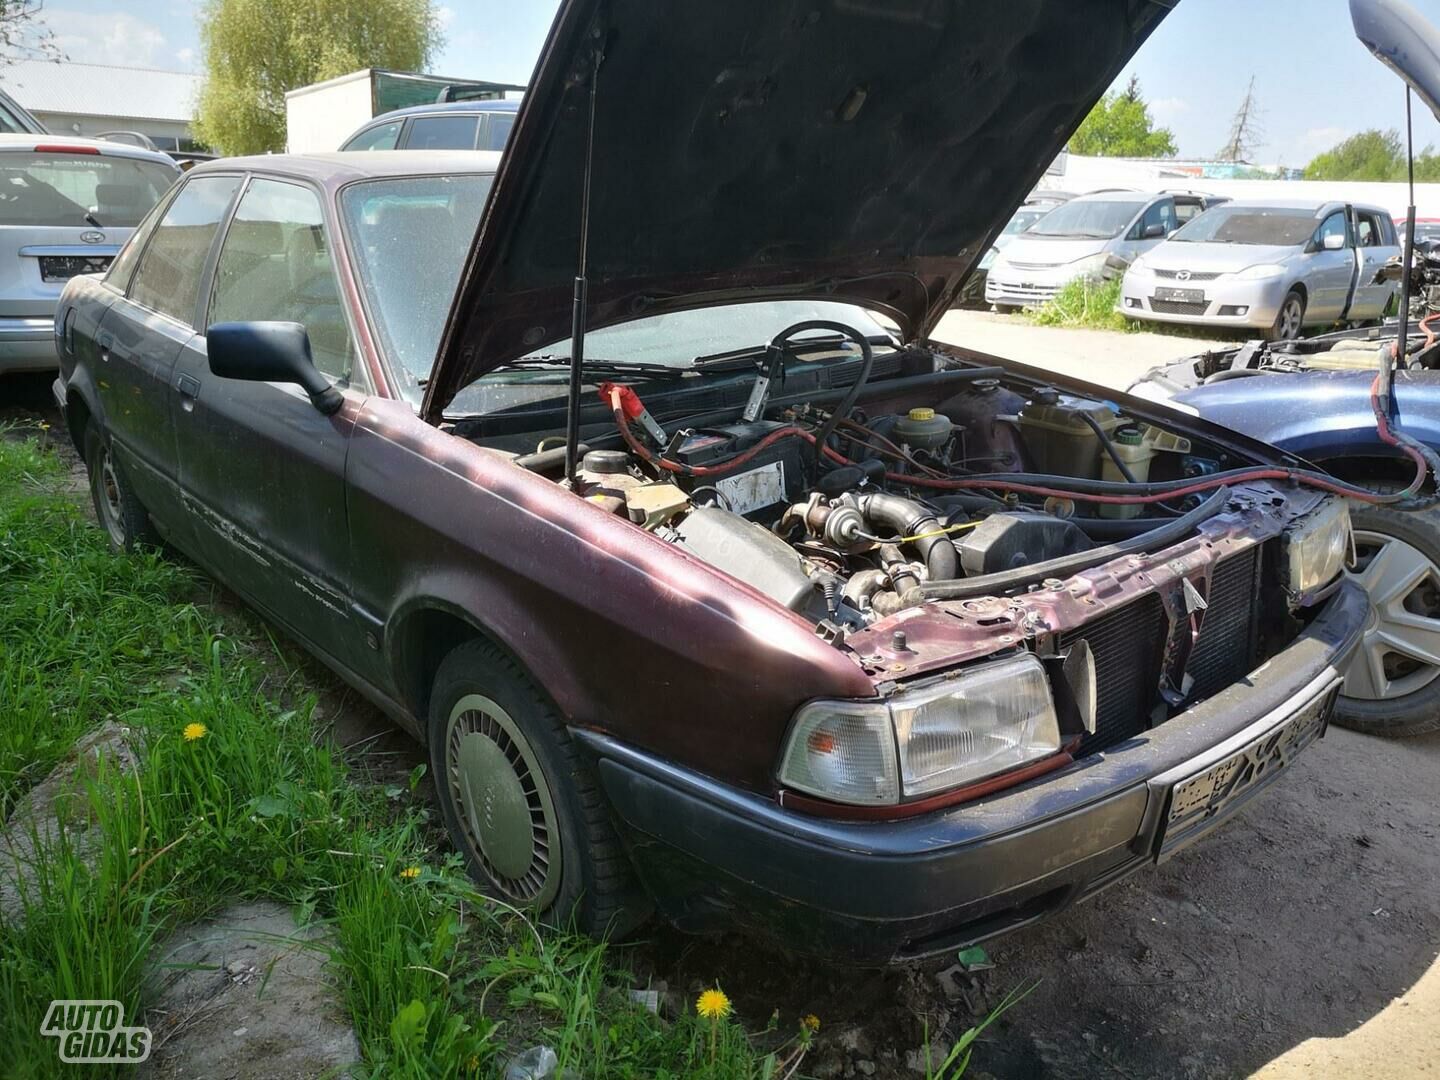 Audi 80 1992 m dalys